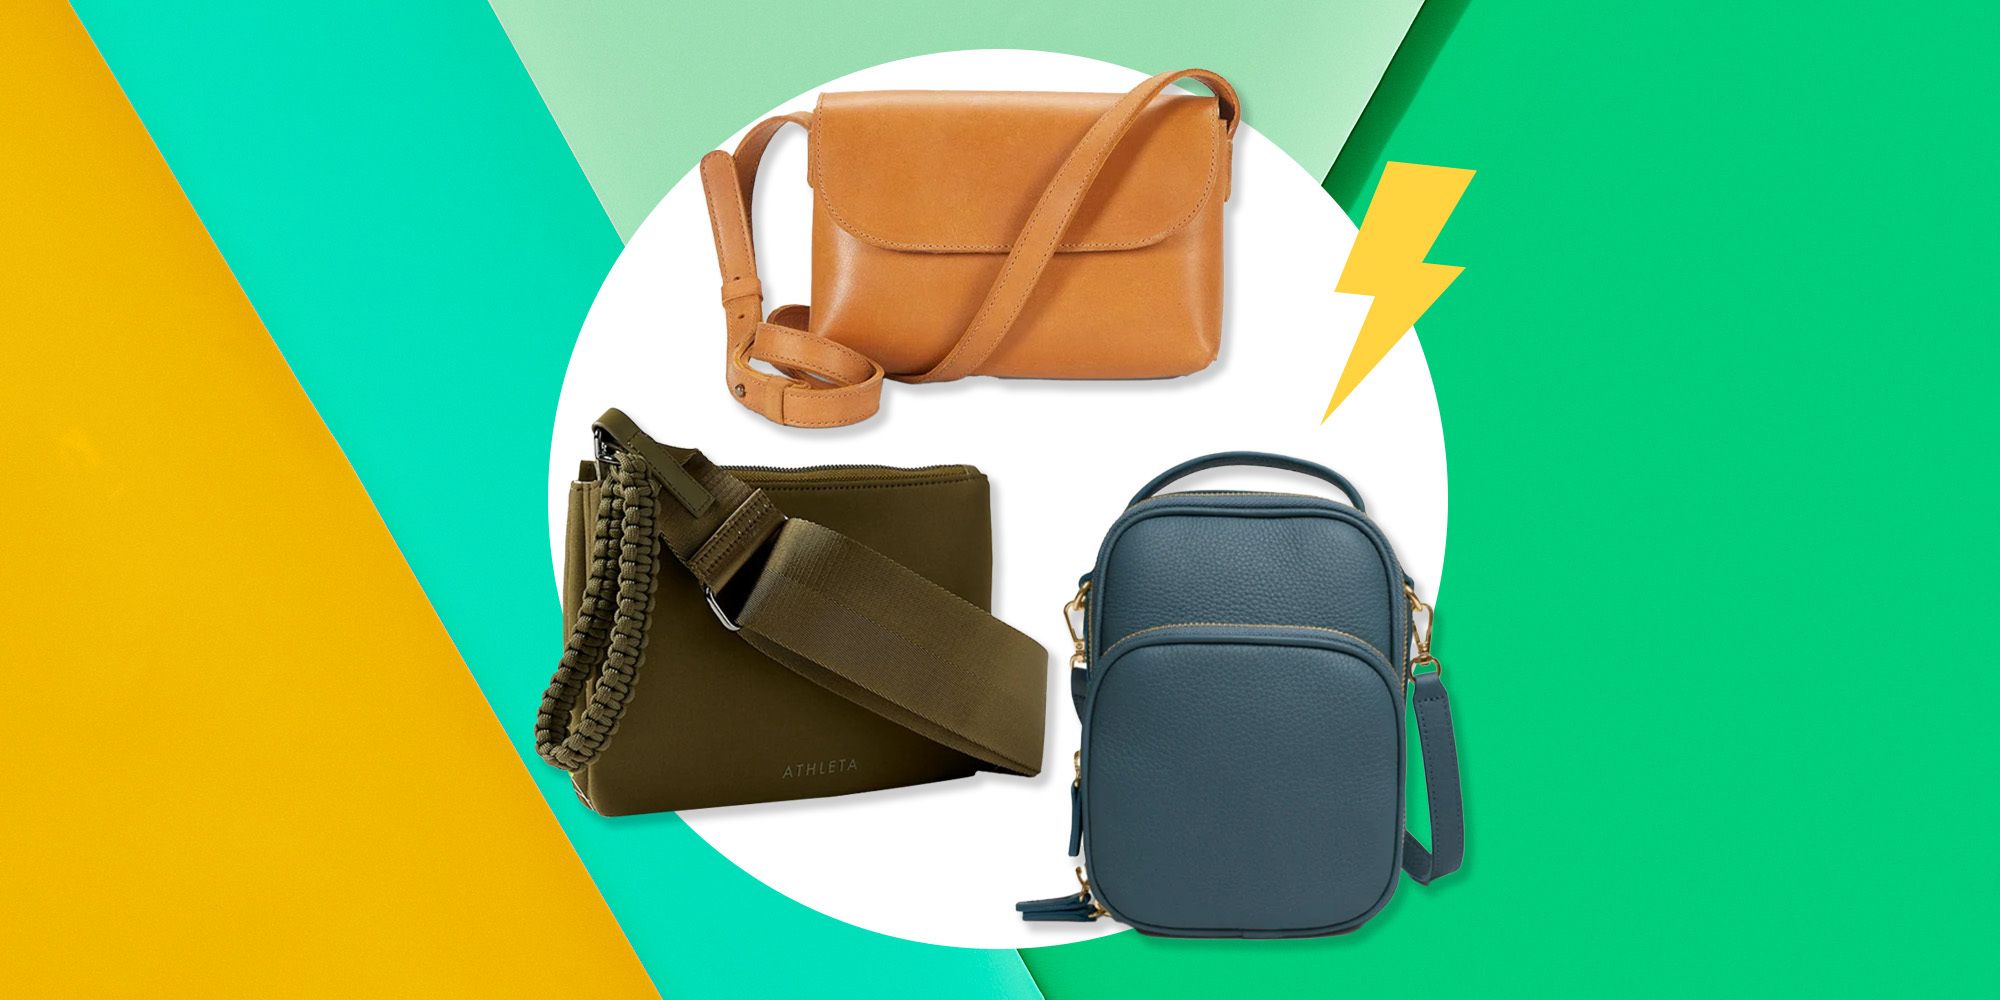 10 Best Travel Handbags for Women - Updated for 2022 | Travel handbags, Travel  bags for women, Best travel bags